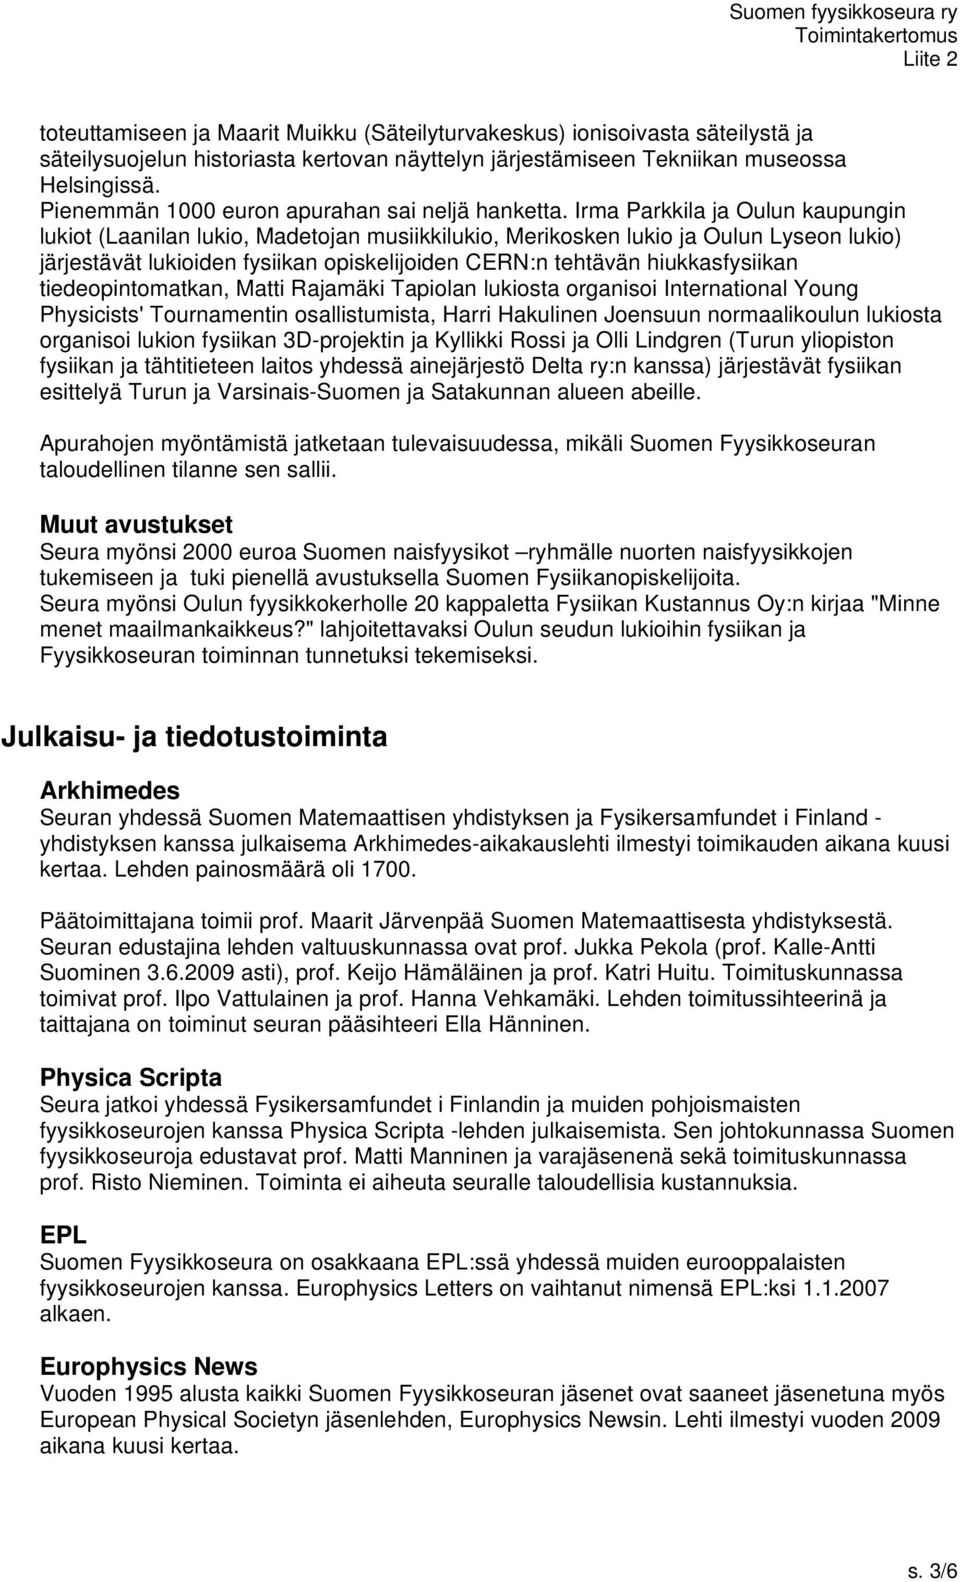 Irma Parkkila ja Oulun kaupungin lukiot (Laanilan lukio, Madetojan musiikkilukio, Merikosken lukio ja Oulun Lyseon lukio) järjestävät lukioiden fysiikan opiskelijoiden CERN:n tehtävän hiukkasfysiikan